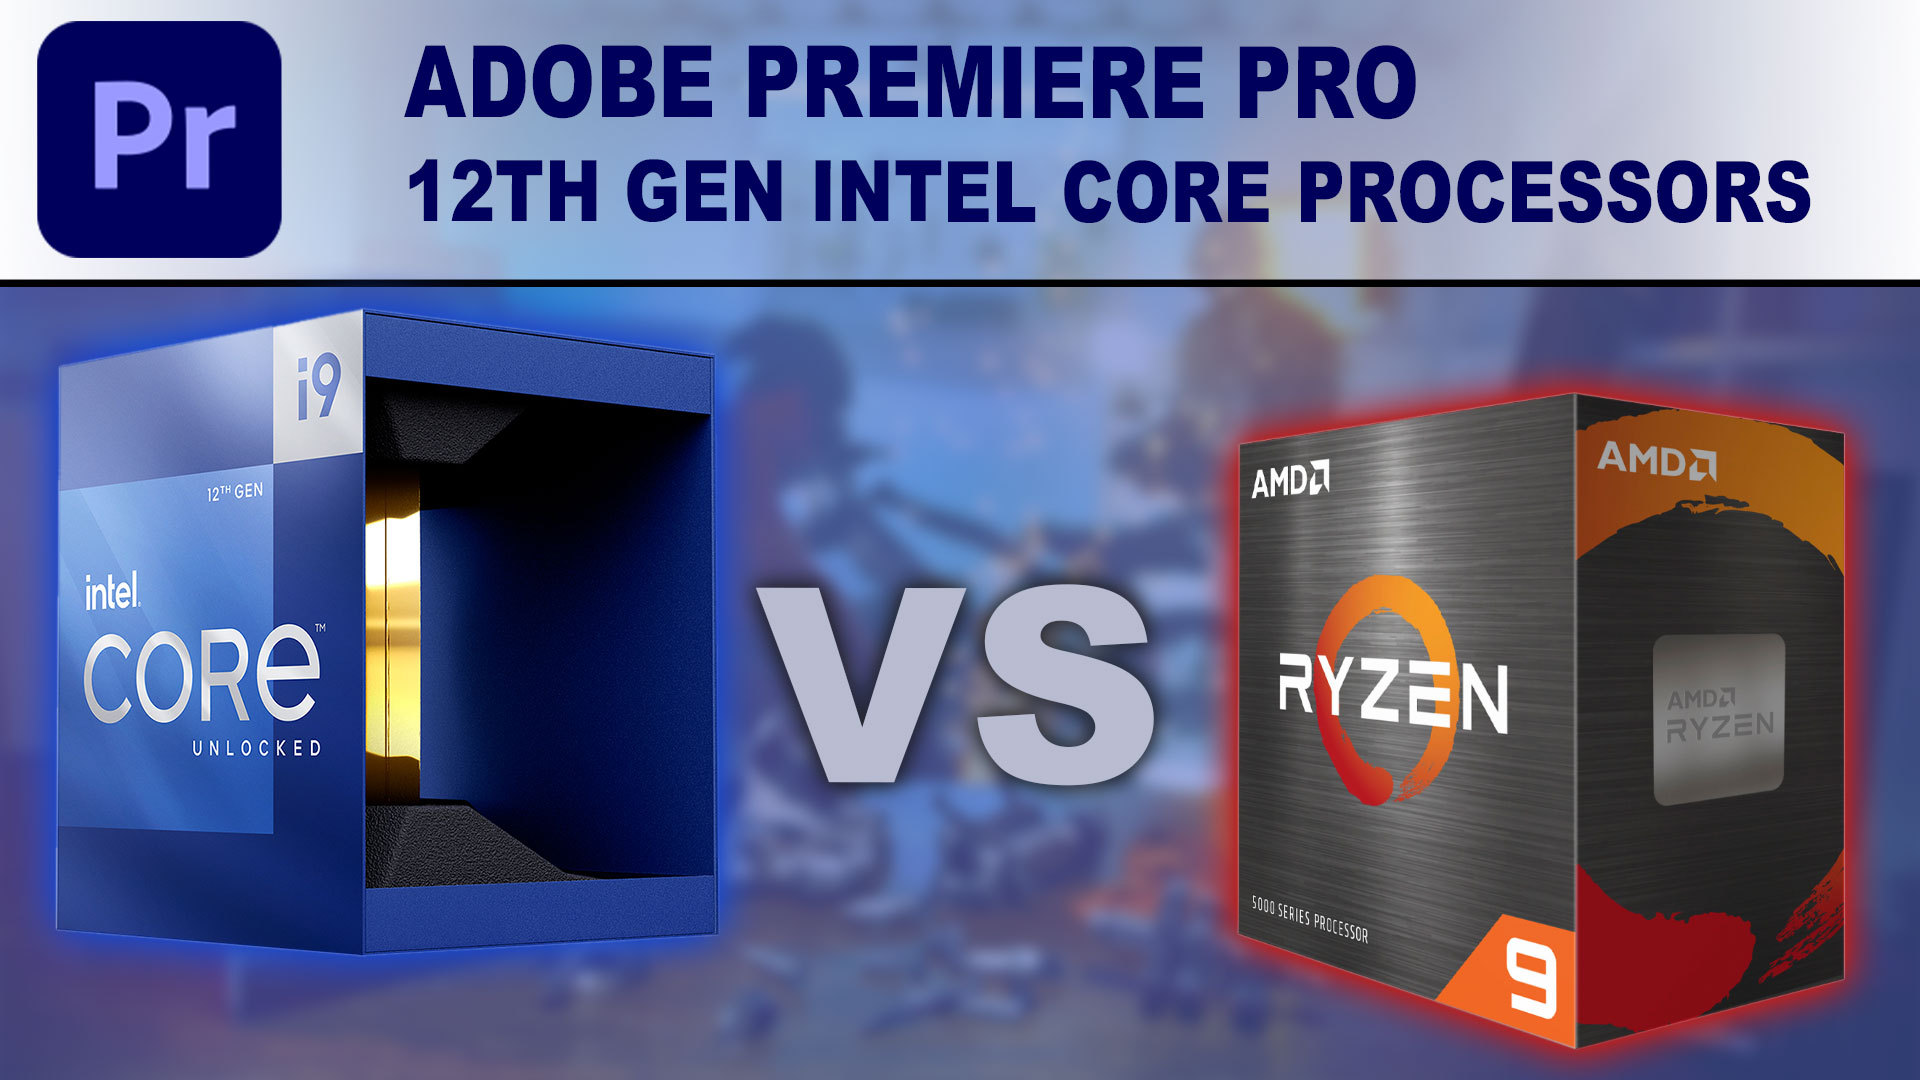 12th Gen Intel Core Processors for Adobe Premiere Pro